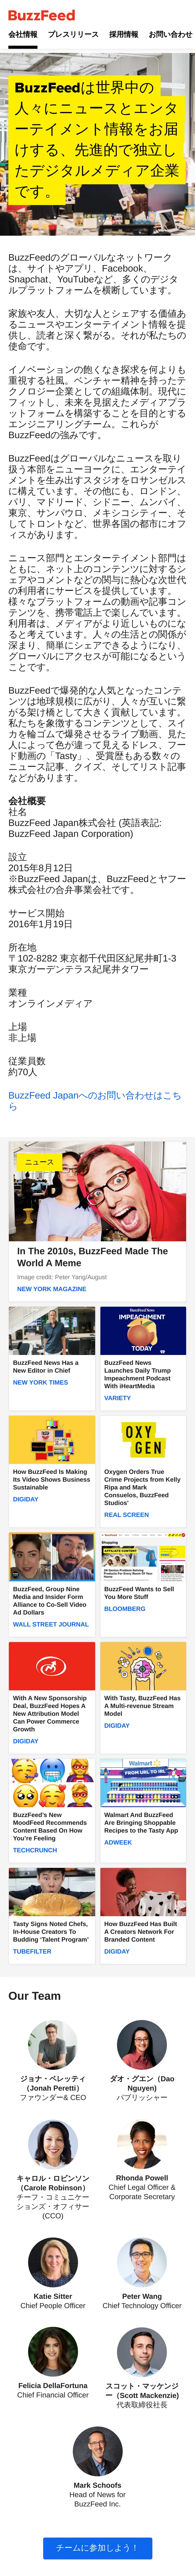 キャプチャ画面 会社名:BuzzFeed Japan株式会社プロジェクト名:BuzzFeed Japan株式会社 画面名:全国トップ デバイス名:SPカテゴリ:広告・クリエイティブタグ:全国トップ,SP